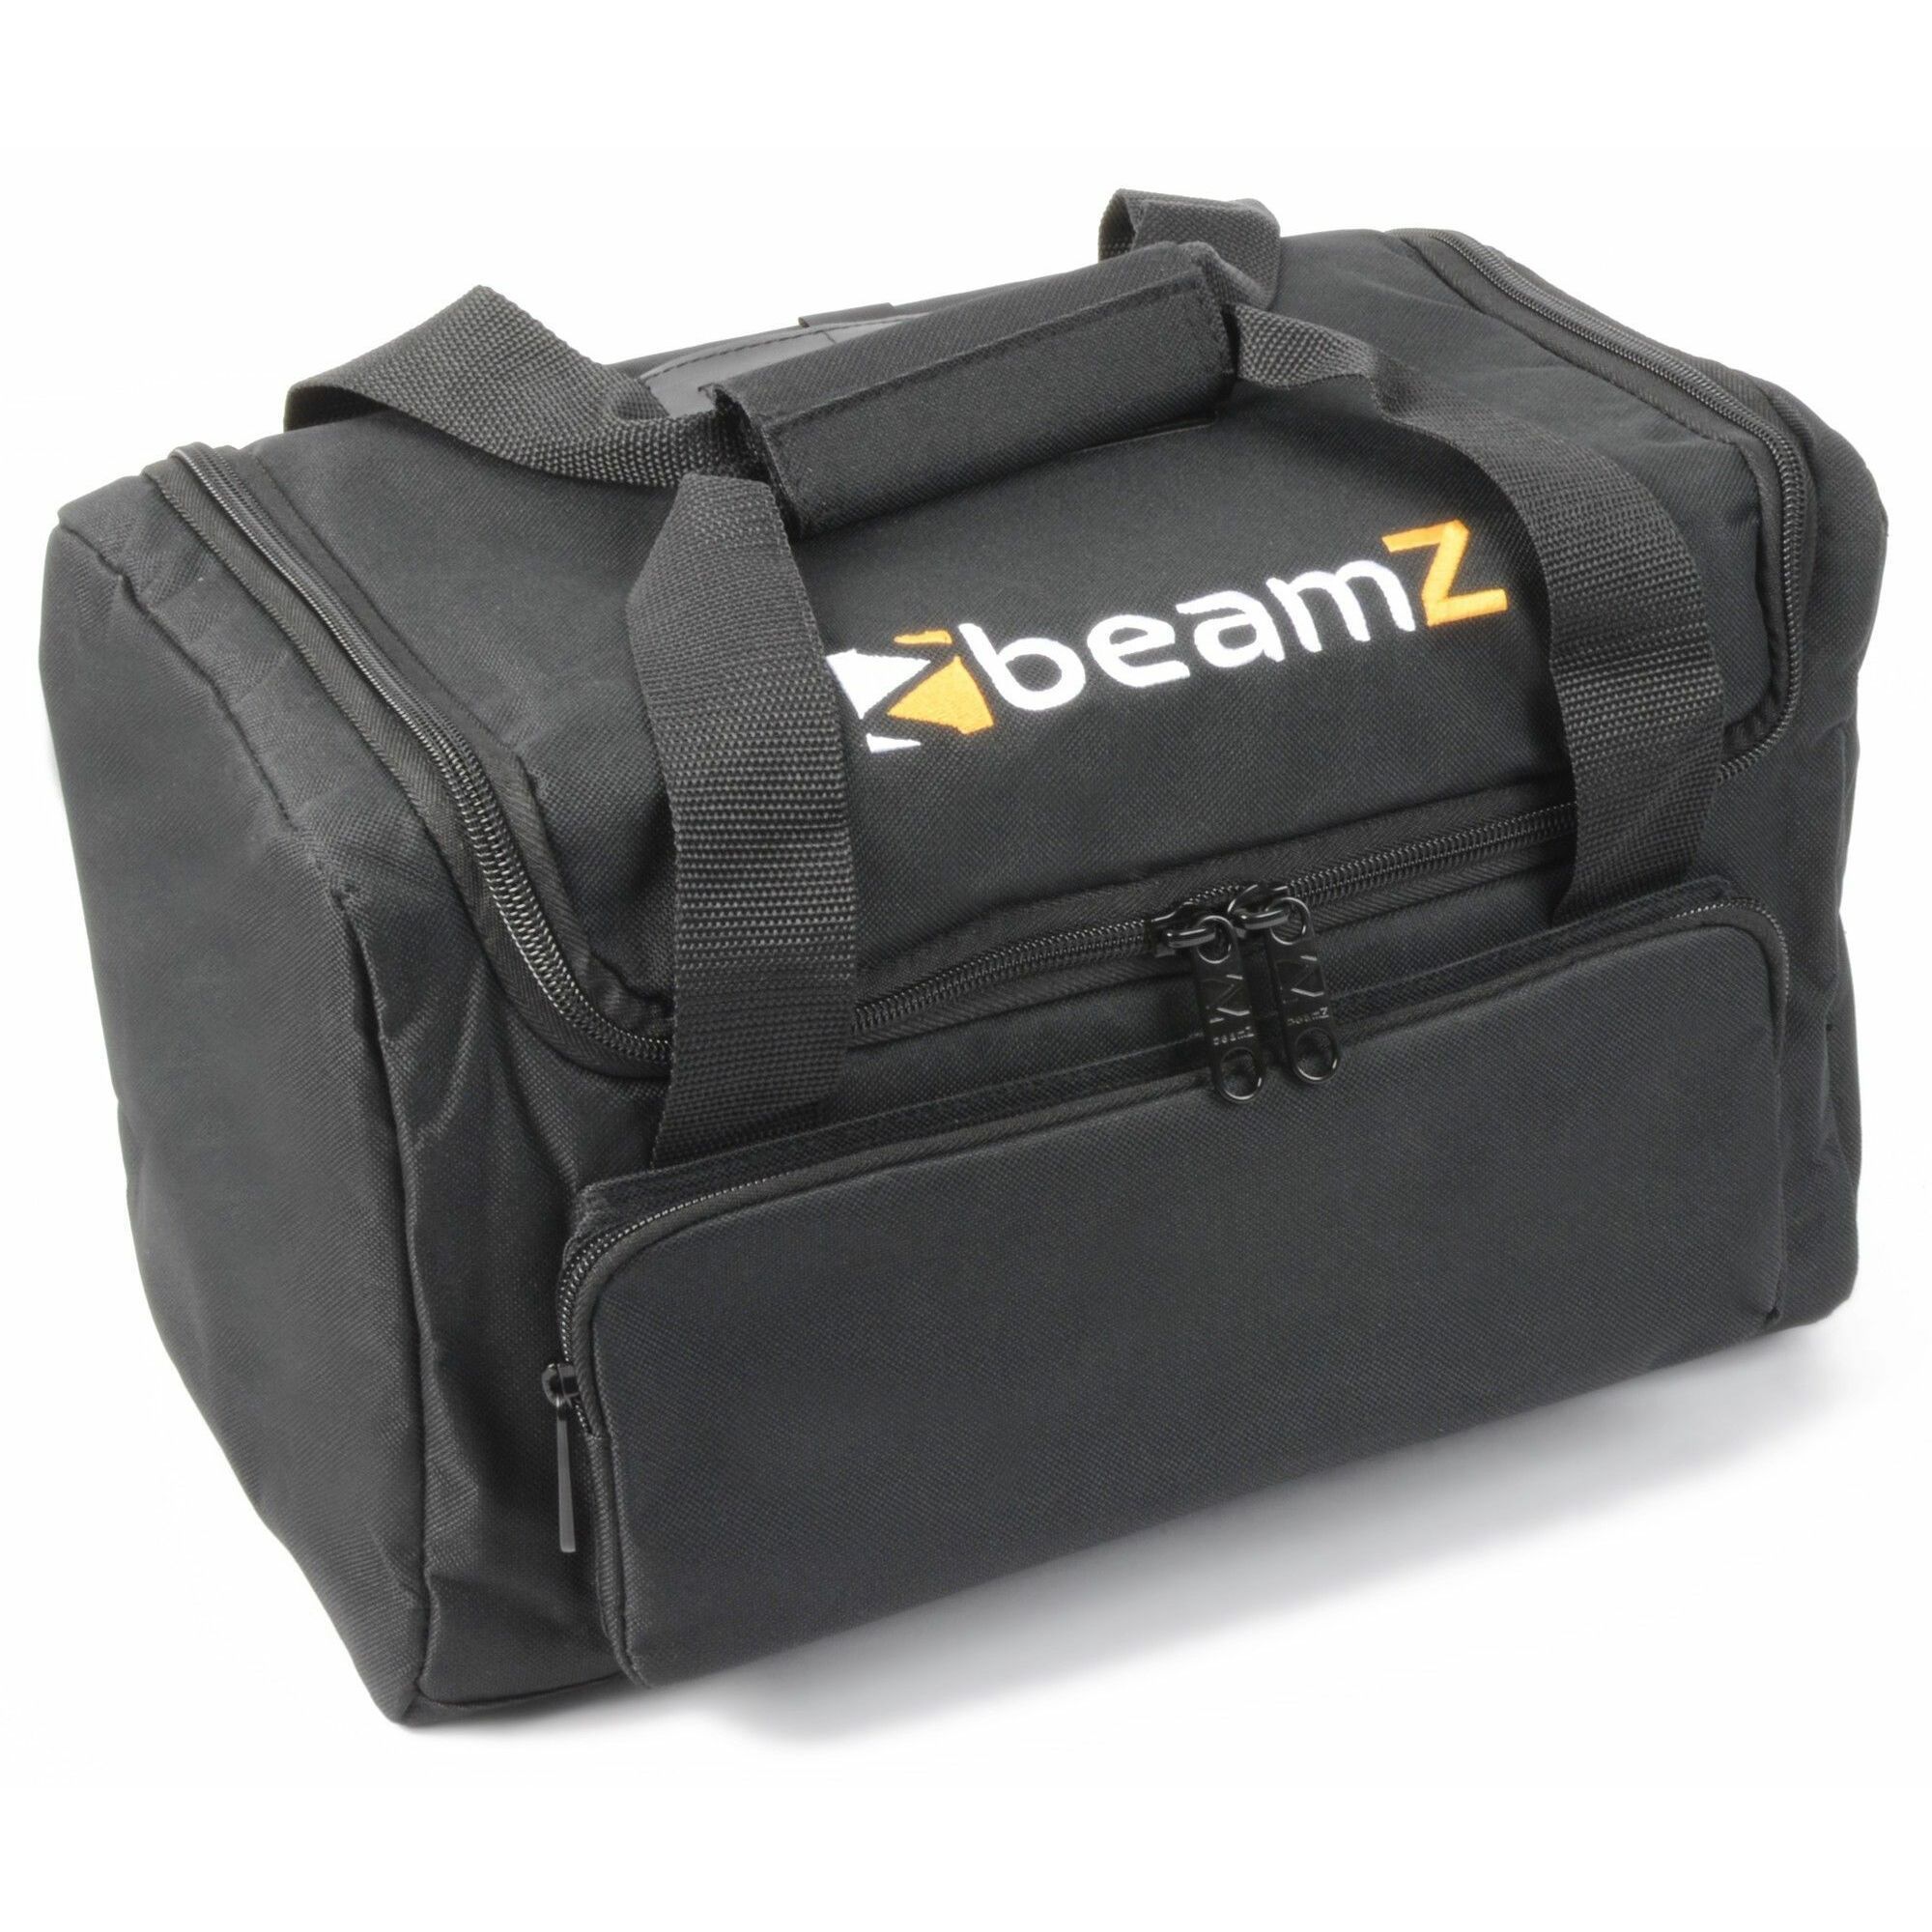 muziek Onderzoek Geschatte Beamz AC-126 lichteffecten flightbag kopen?